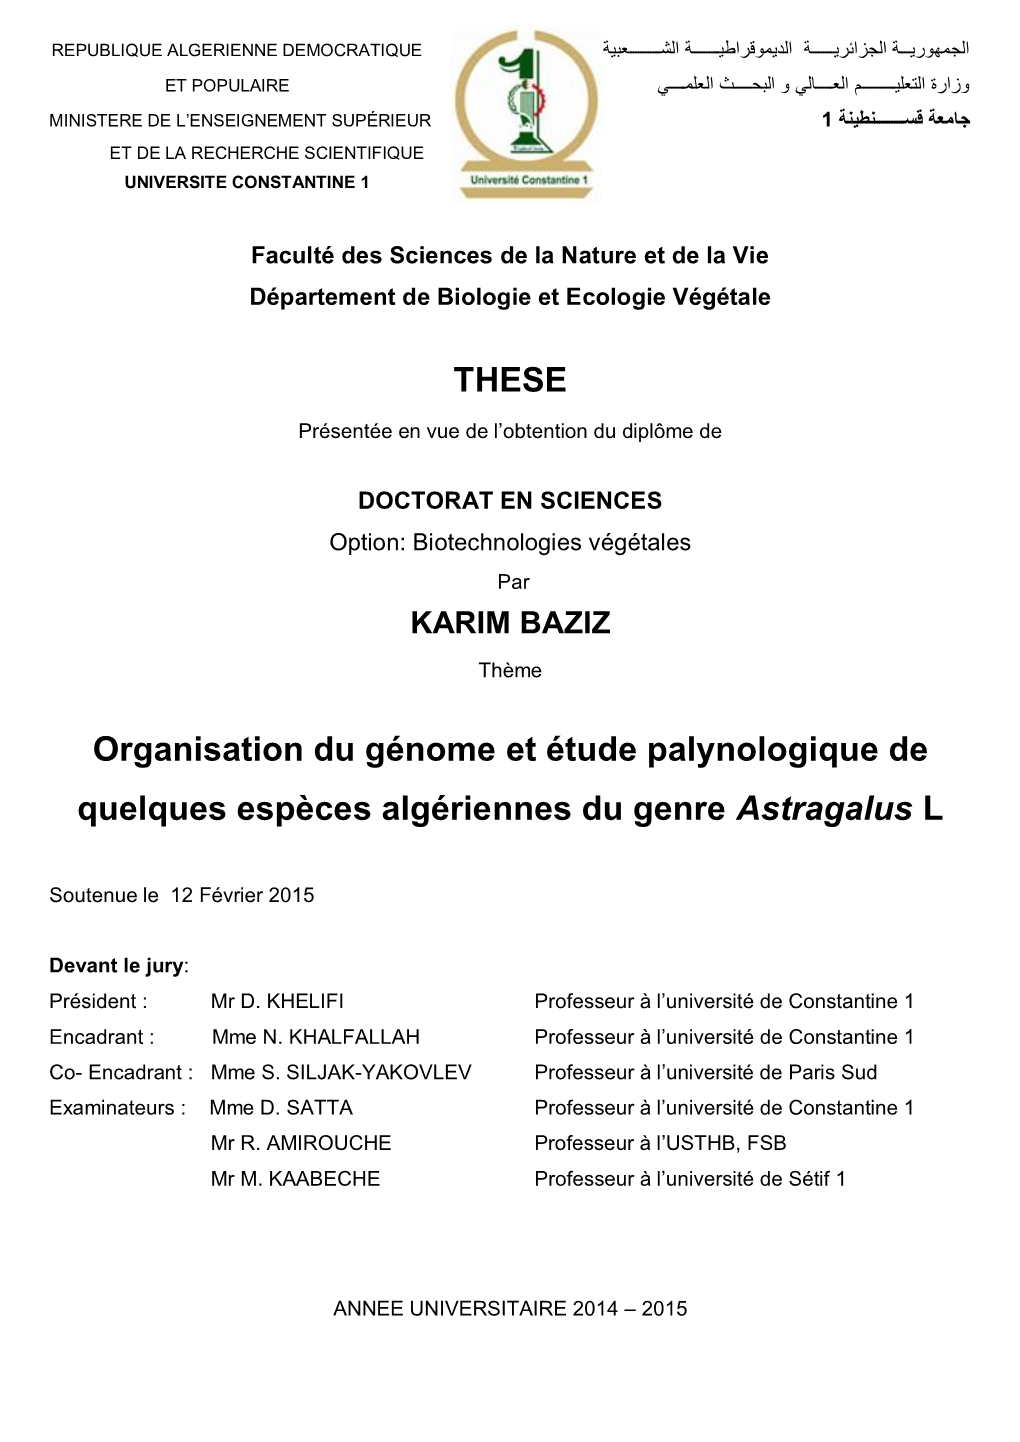 THESE Organisation Du Génome Et Étude Palynologique De Quelques